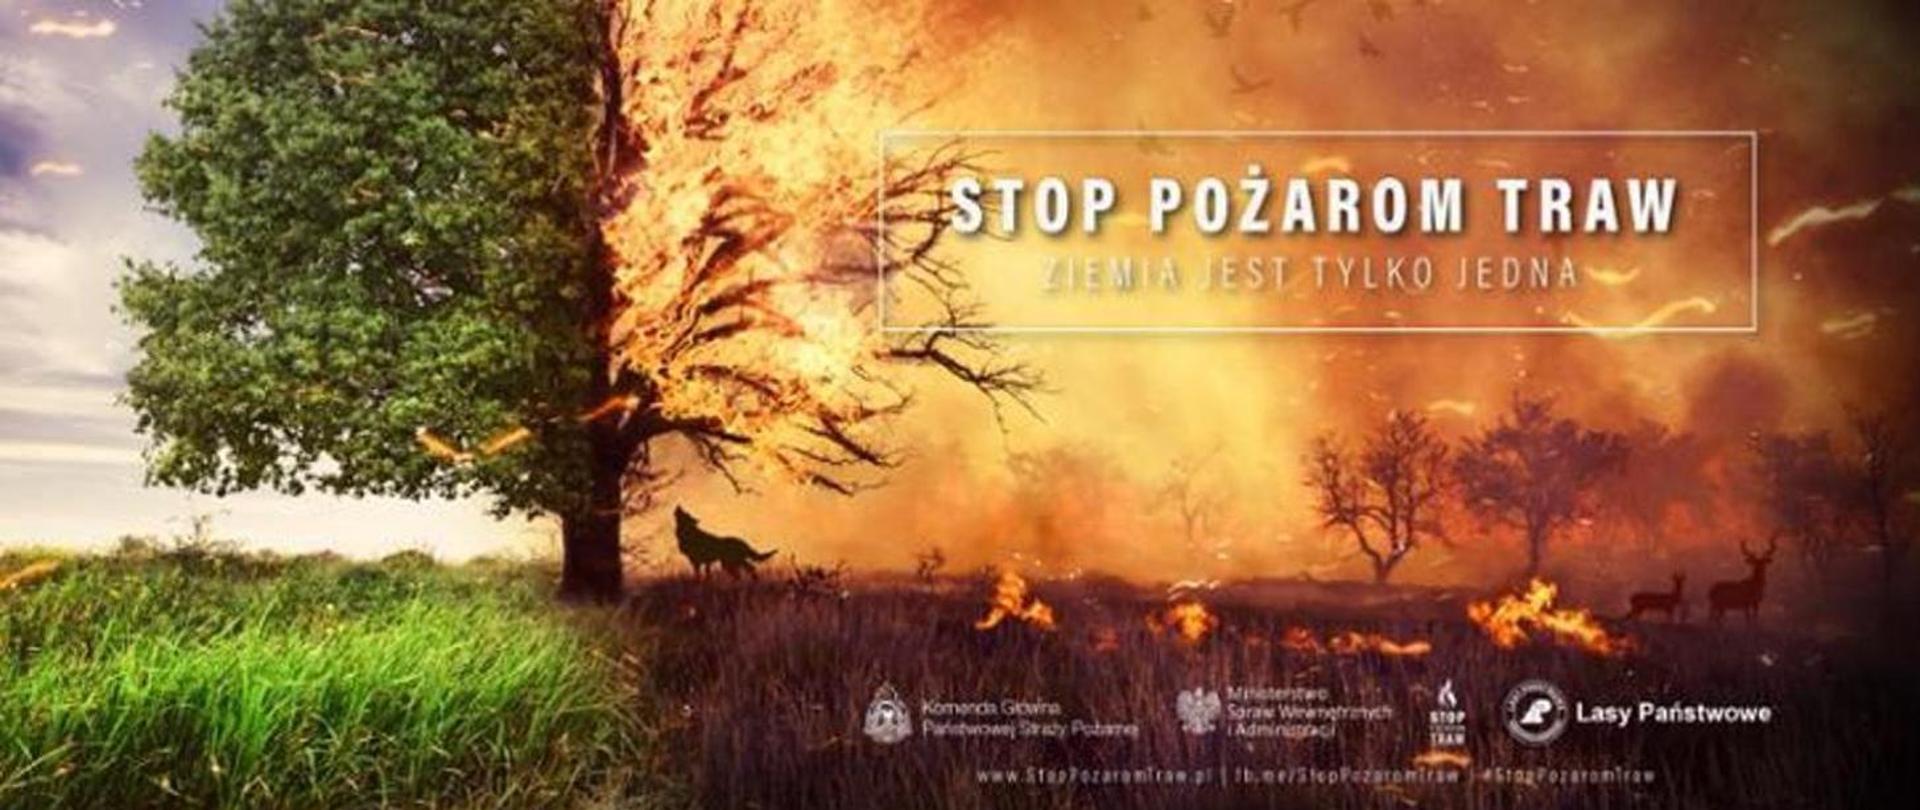 Z lewej strony fotografii zielona łąka i połowa rosnącego zielonego drzewa, natomiast z prawej strony łąka i drzewa trawione przez ogień, uciekające zwierzęta leśne, u góry napis Stop Pożarom Traw, Ziemia jest tylko jedna.